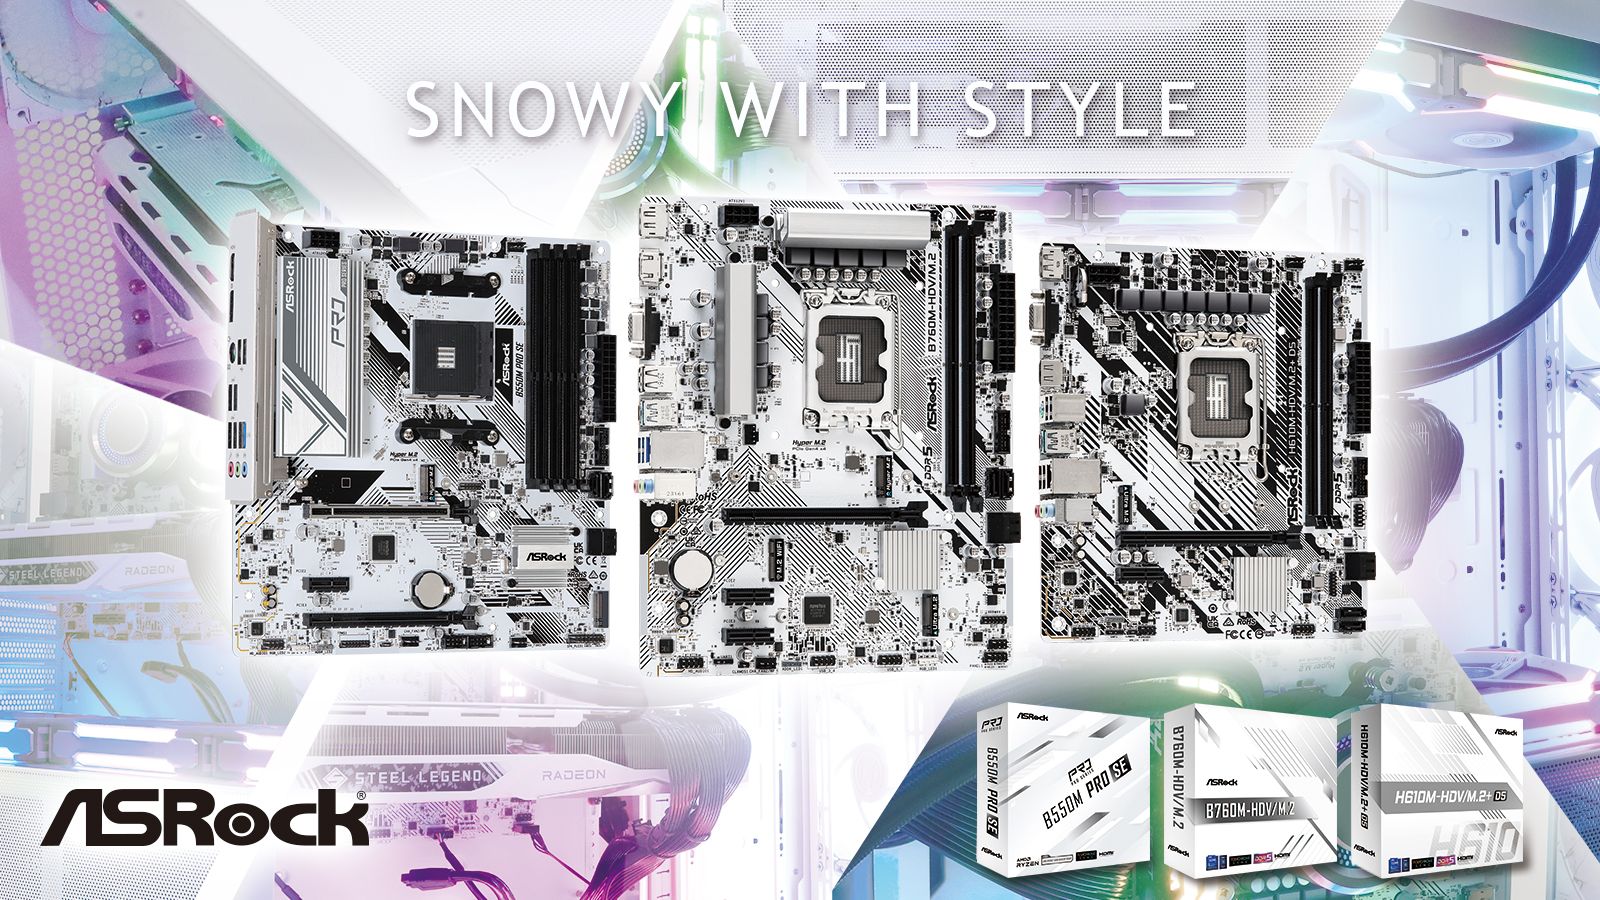 ¡Un estilo all-white y la magia de la nieve! ASRock lanza unas placas base completamente blancas